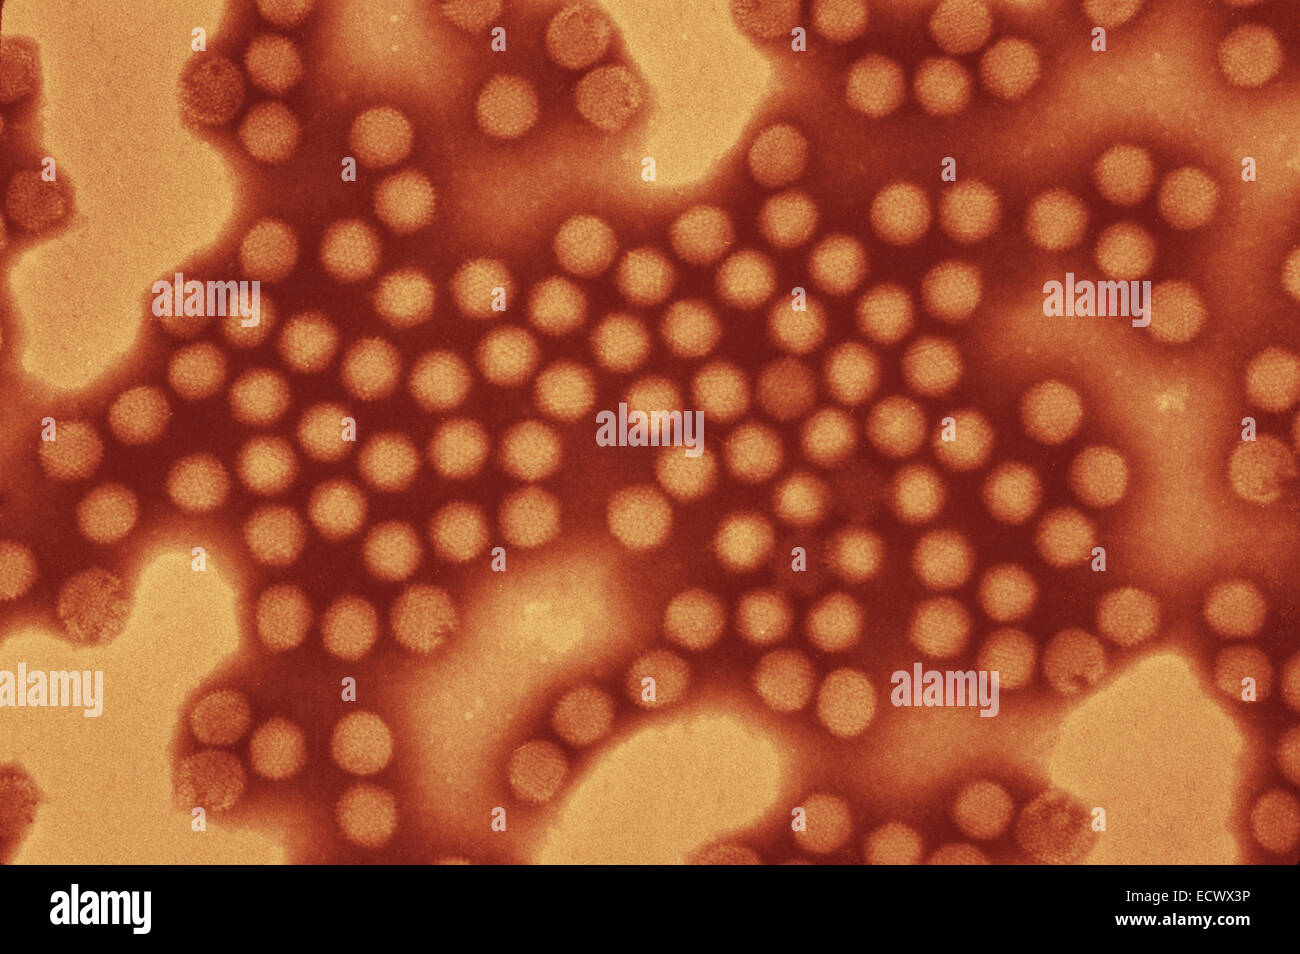 Micrografia elettronica di adenovirus equina. Foto Stock